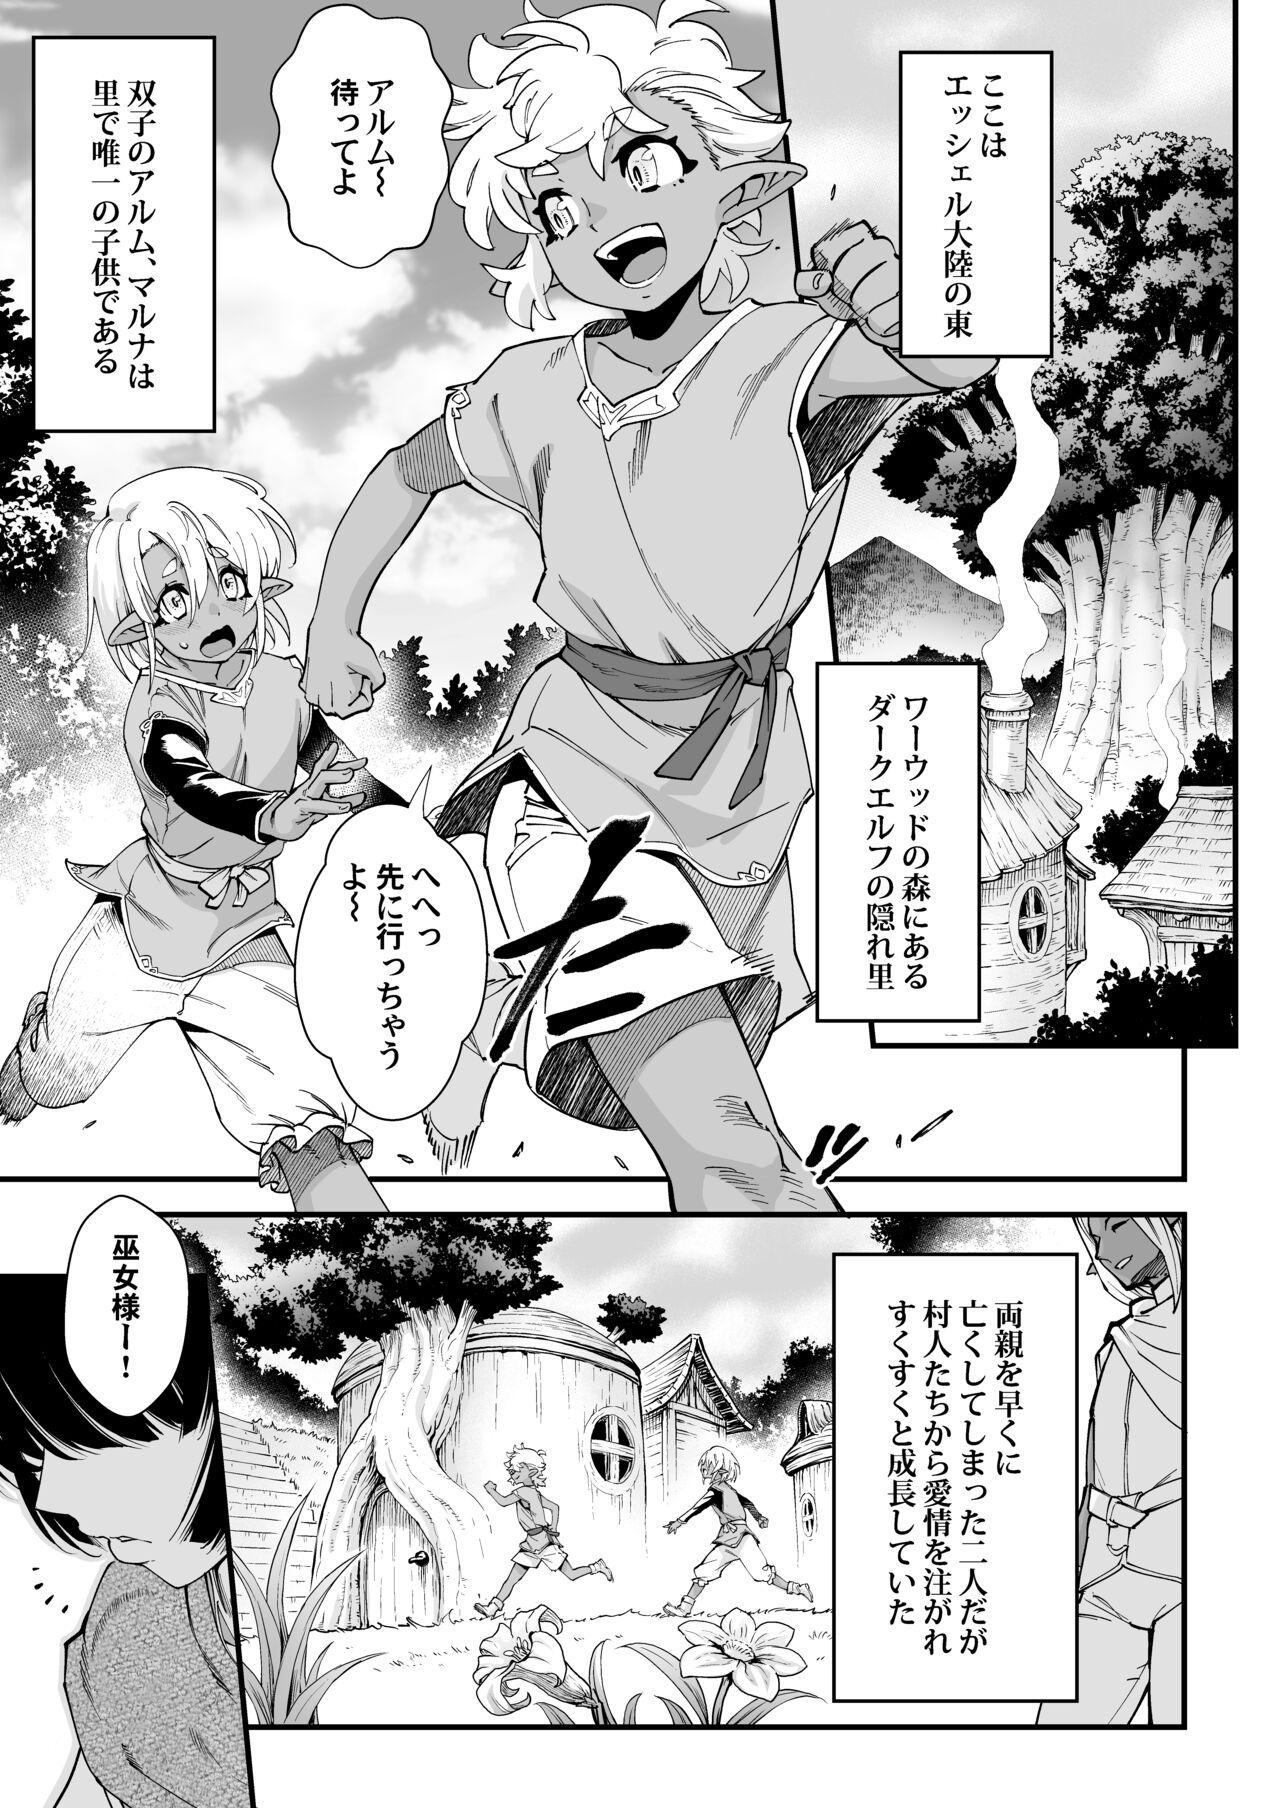 Bubblebutt Kuroi mori no o hanashi - Original Desperate - Page 5